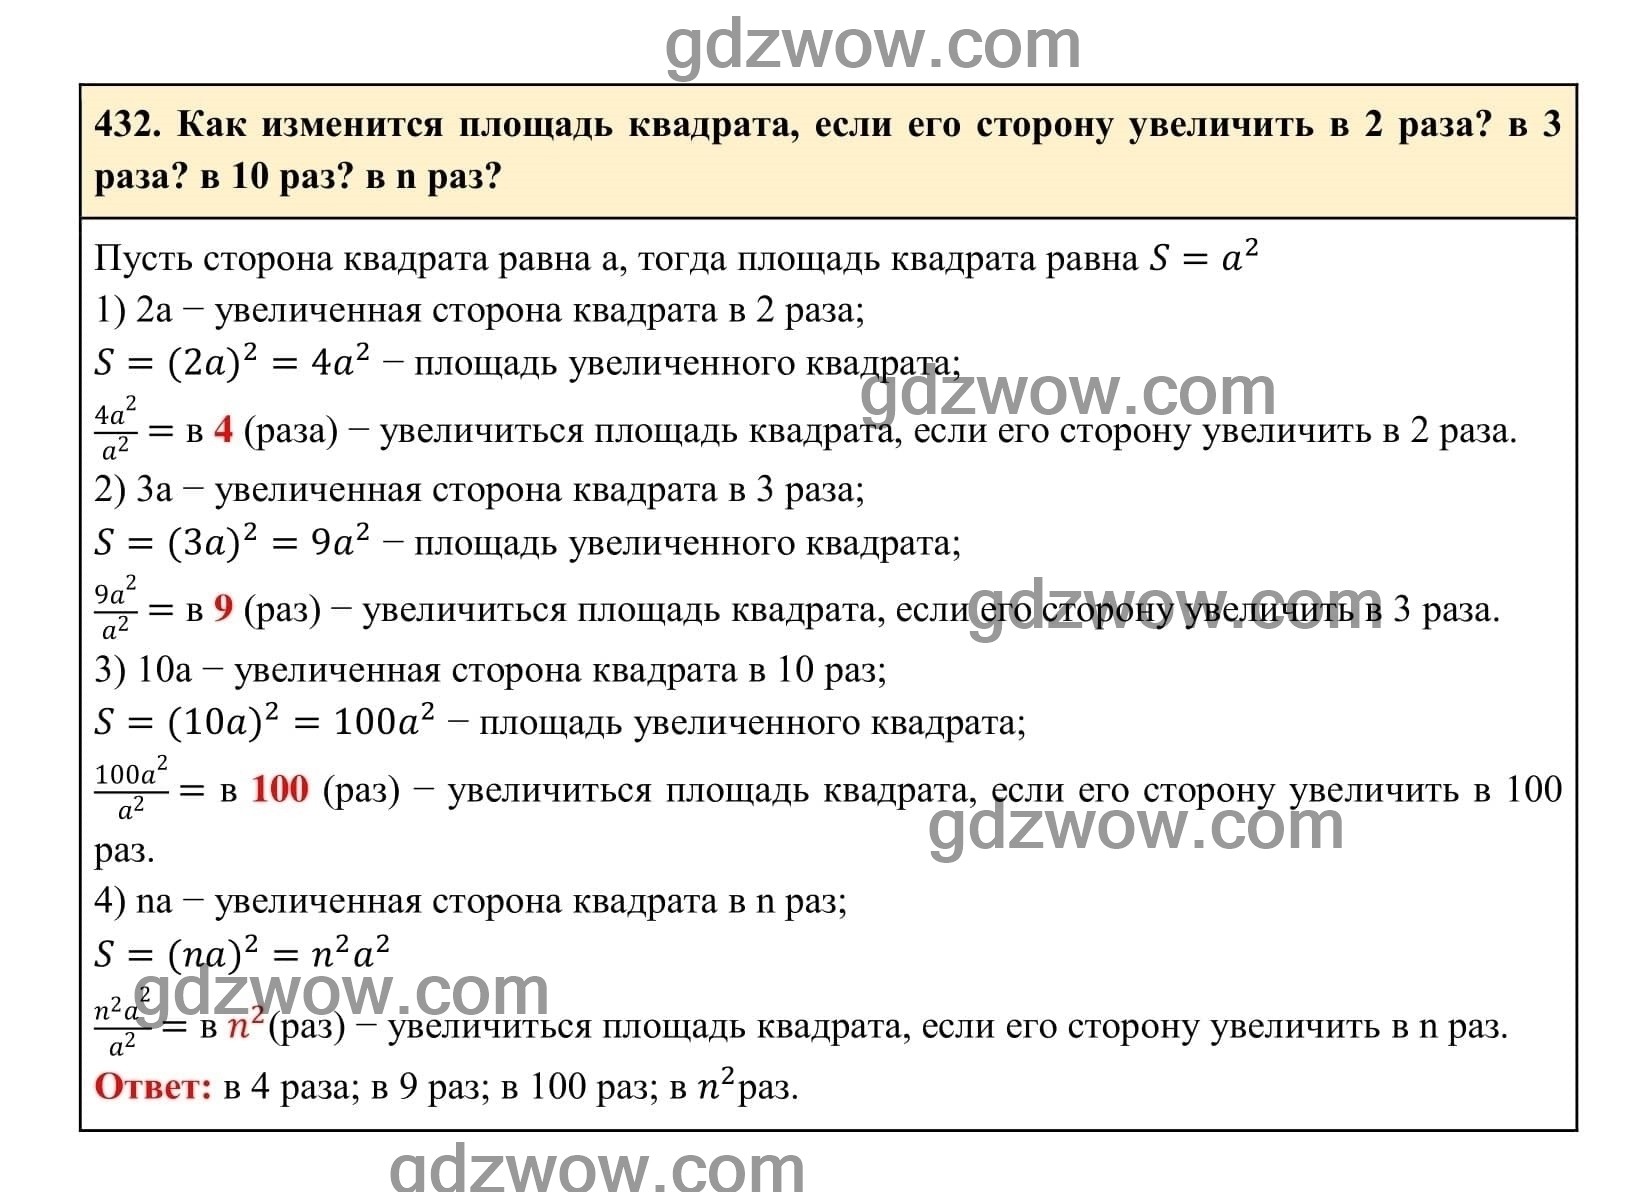 Упражнение 432 - ГДЗ по Алгебре 7 класс Учебник Макарычев (решебник) - GDZwow